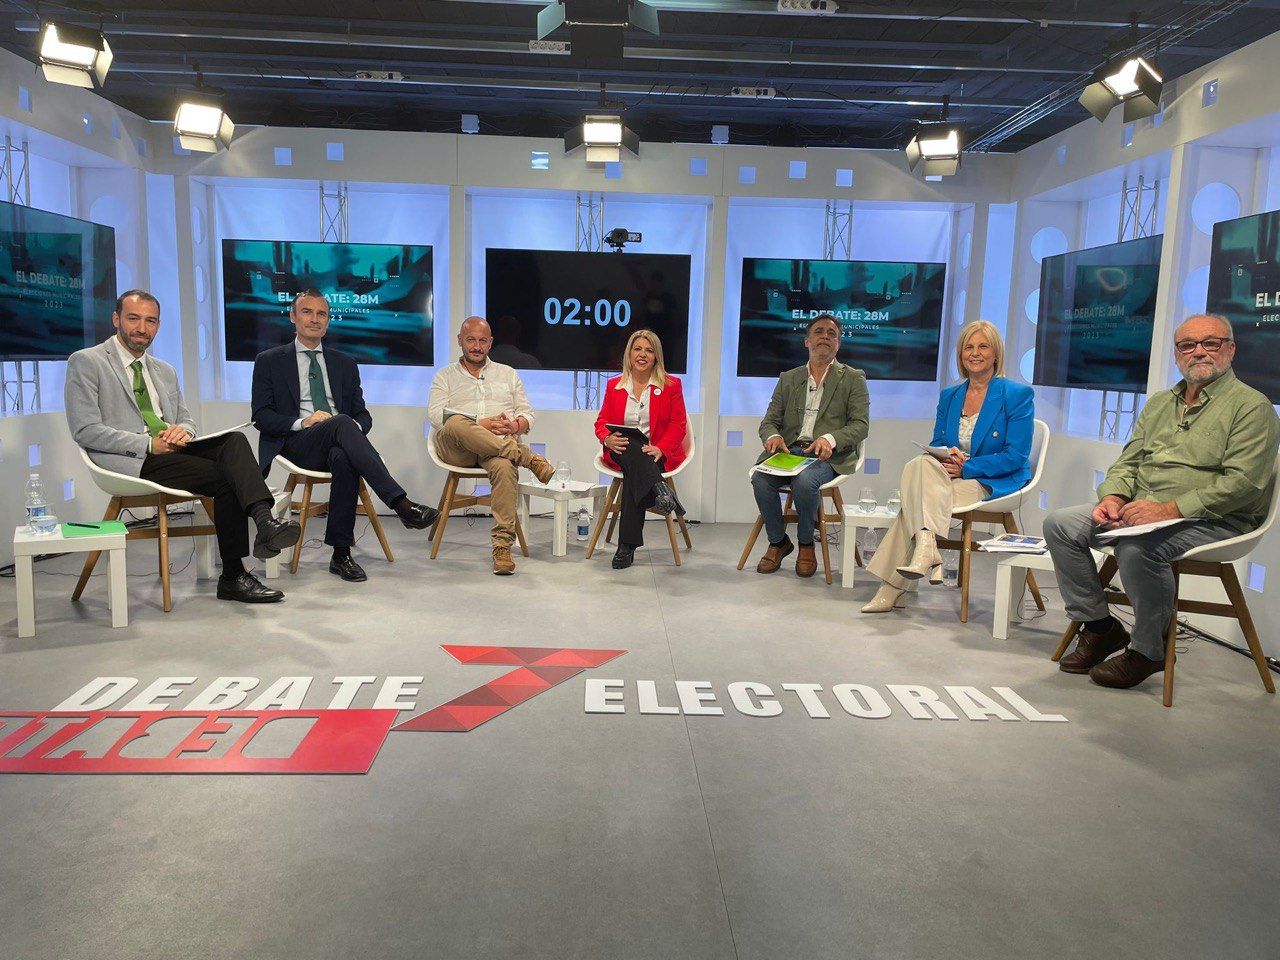 El debate del 28M en Jerez. Los aspirantes, en el plató de '7TV'.